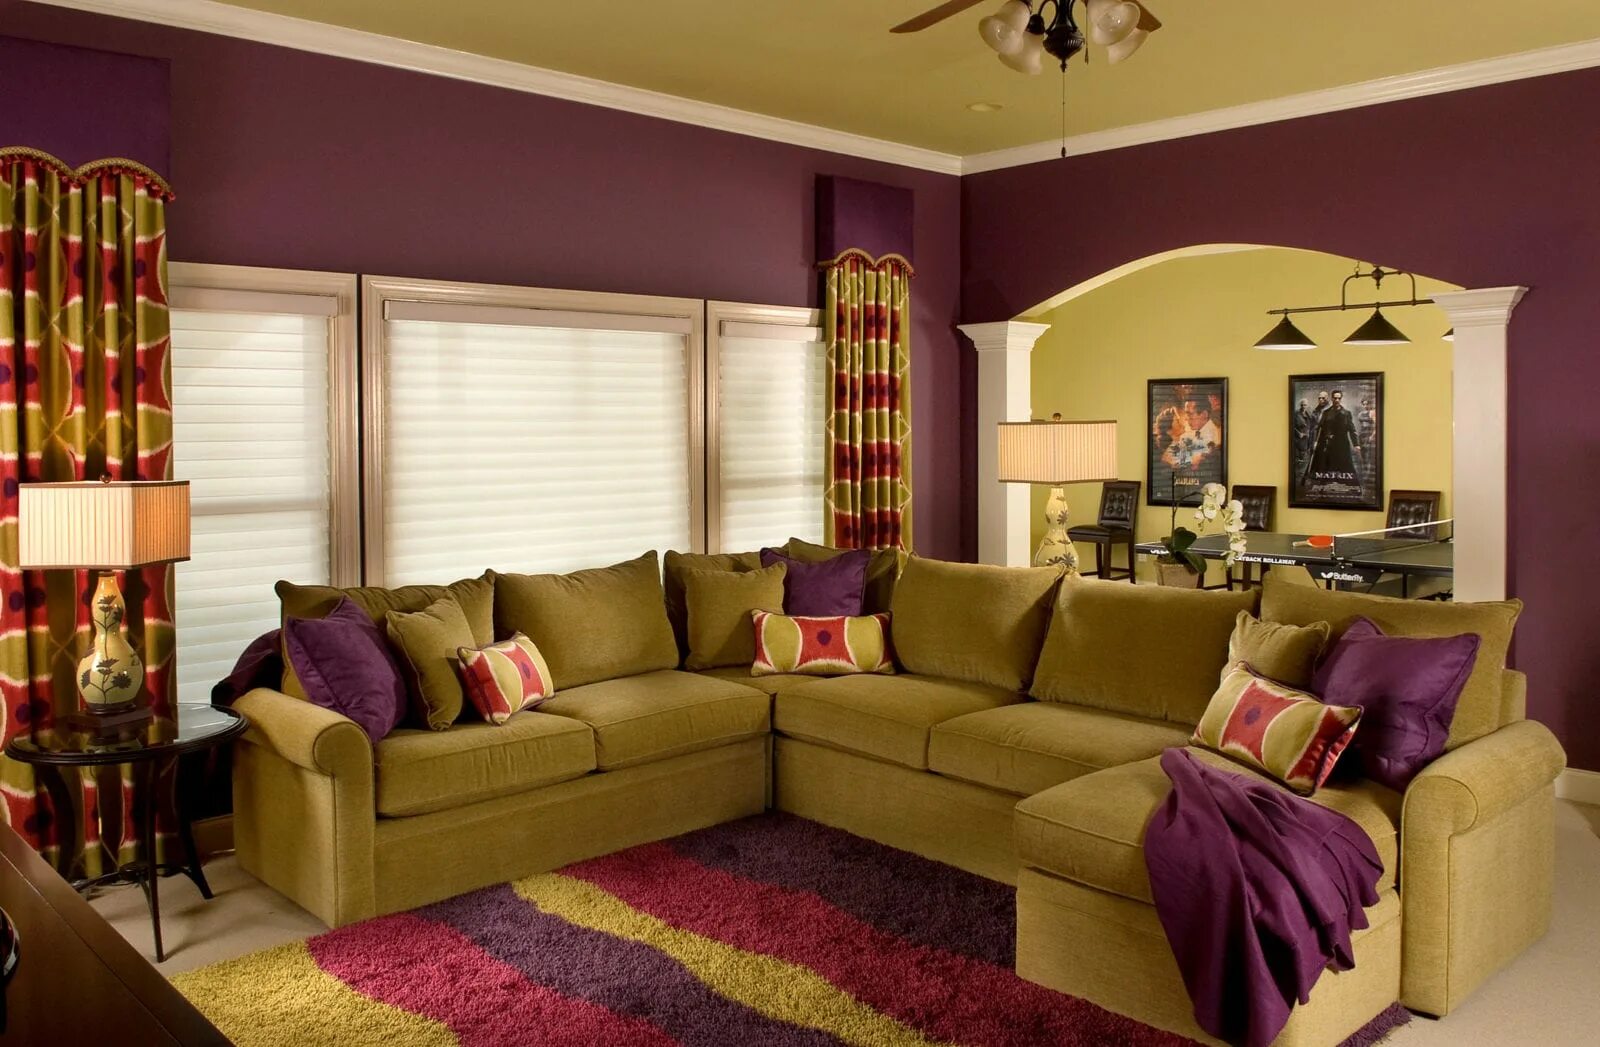 Цвет диванов в интерьере гостиной. Цветовые решения в интерьере. Цветовые сочетания в интерьере гостиной. Яркий интерьер гостиной. Цветовая гамма в интерьере гостиной.